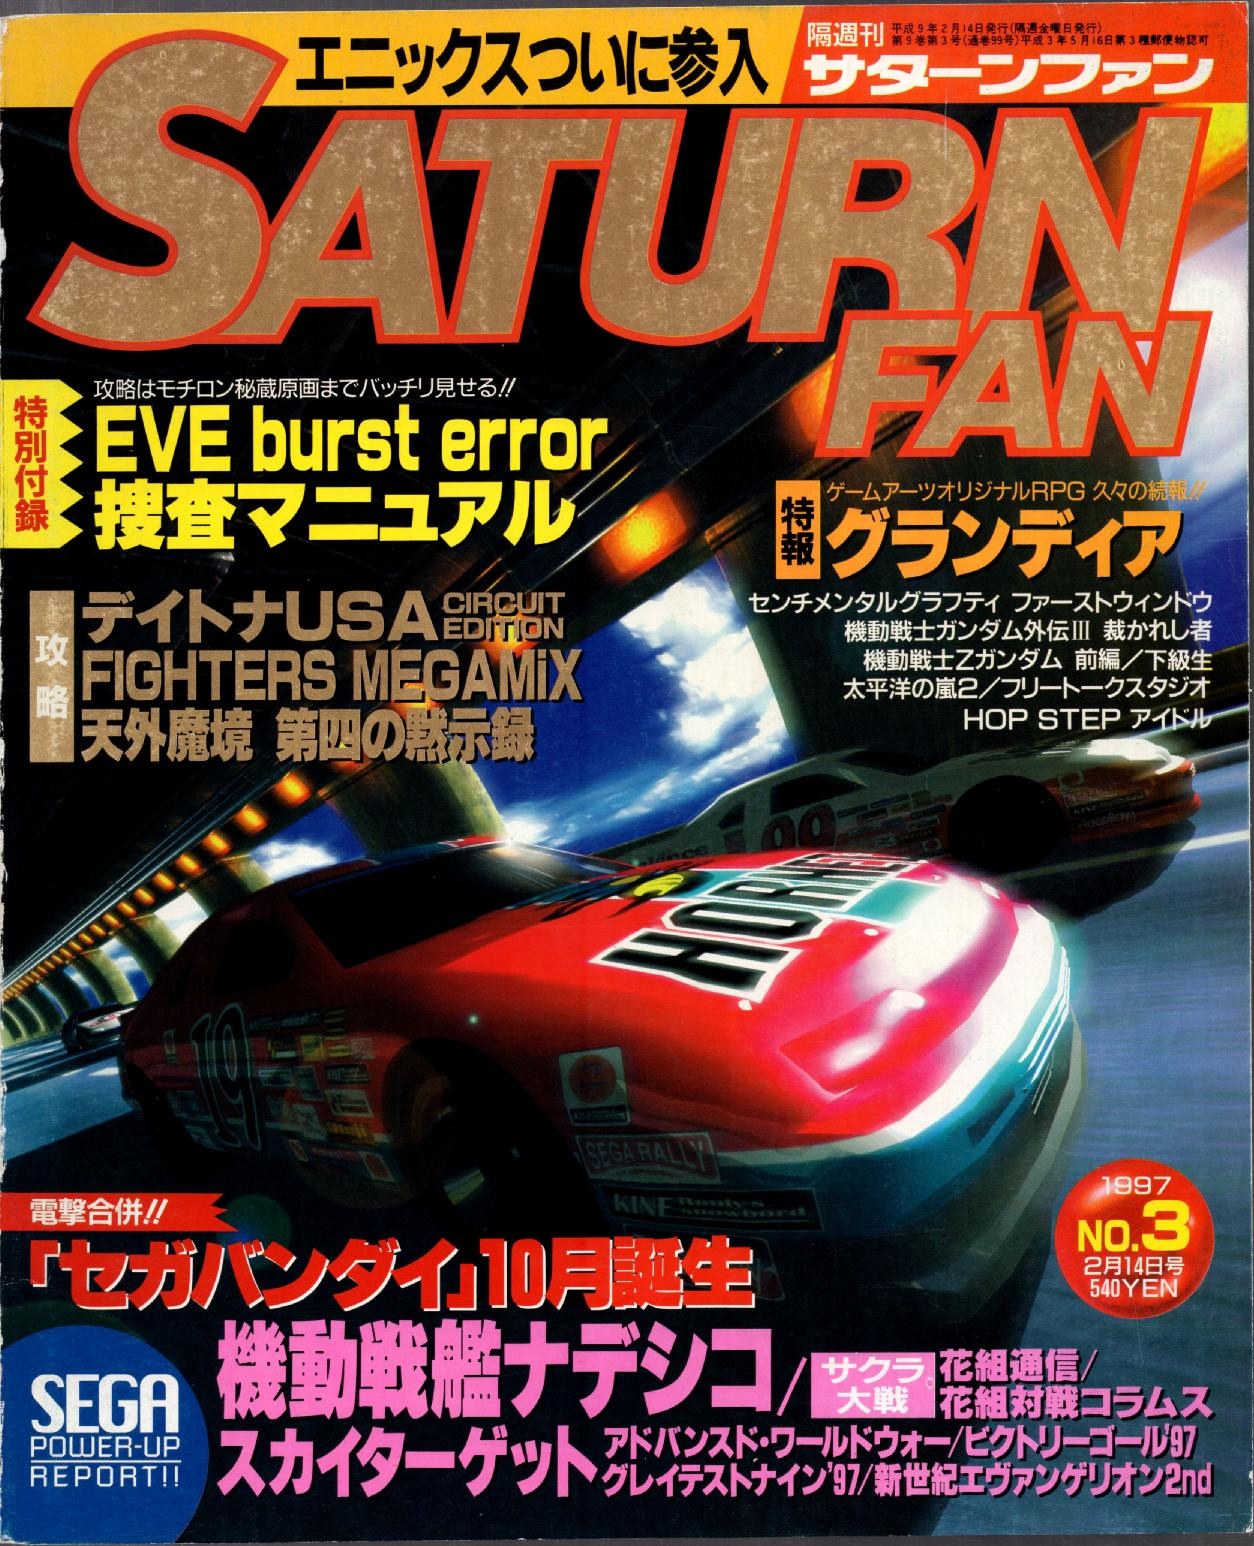 SaturnFan JP 1997-03 19970214.pdf